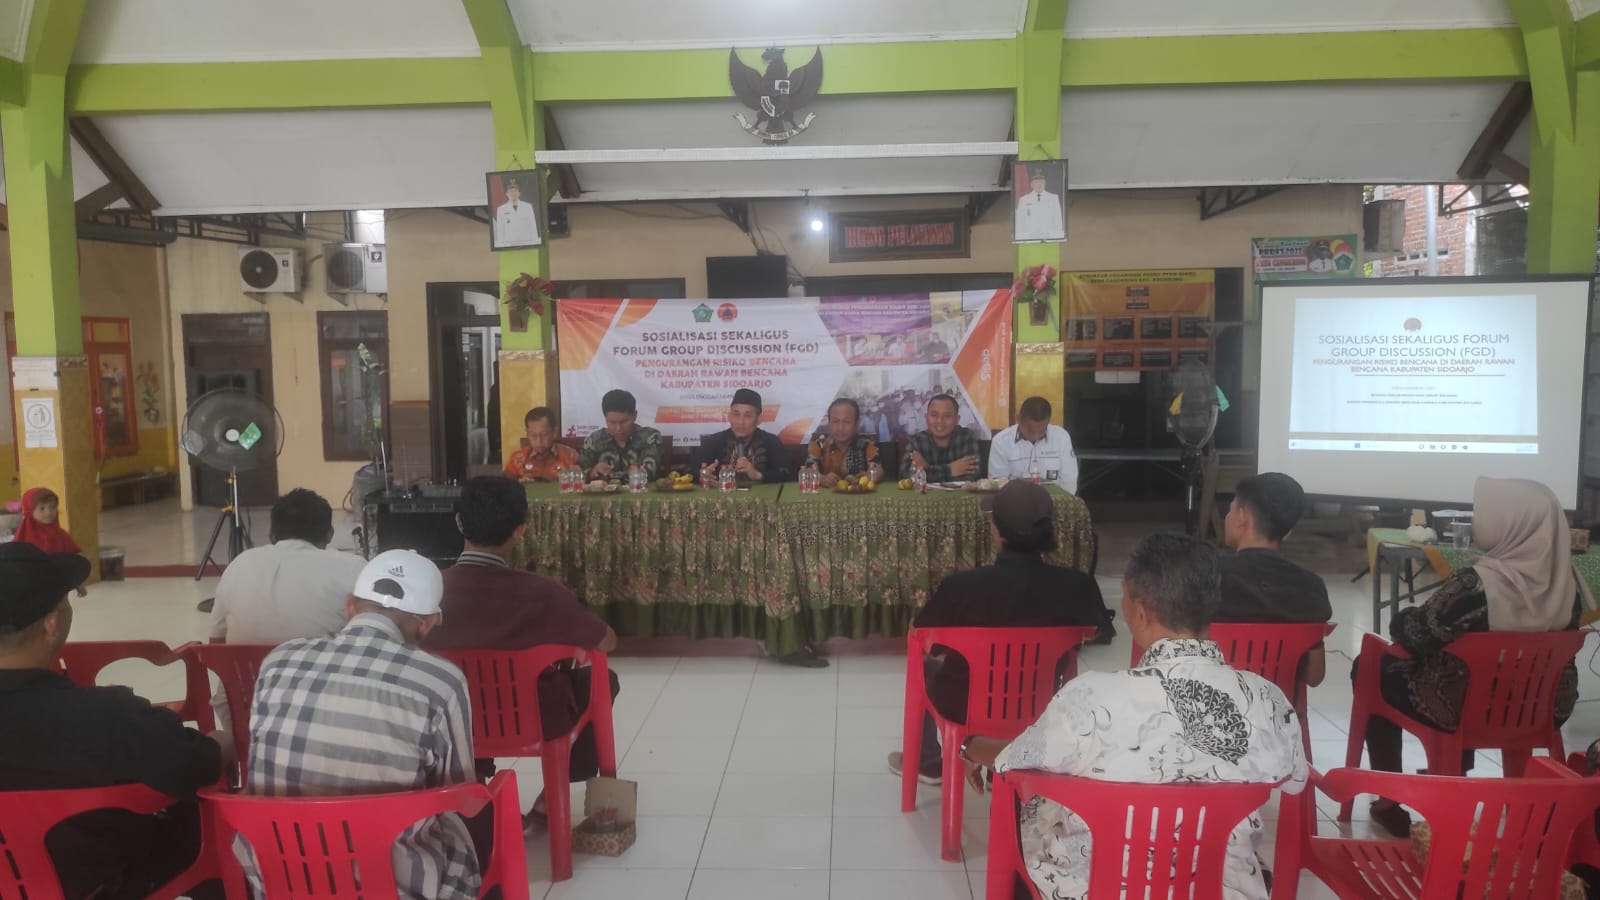 Sosialisasi Sekaligus Forum Grup Discussion (FGD) Pengurangan Risiko Bencana di Daerah Rawan Bencana bertempat di Desa Cangkring, Kecamatan Krembung